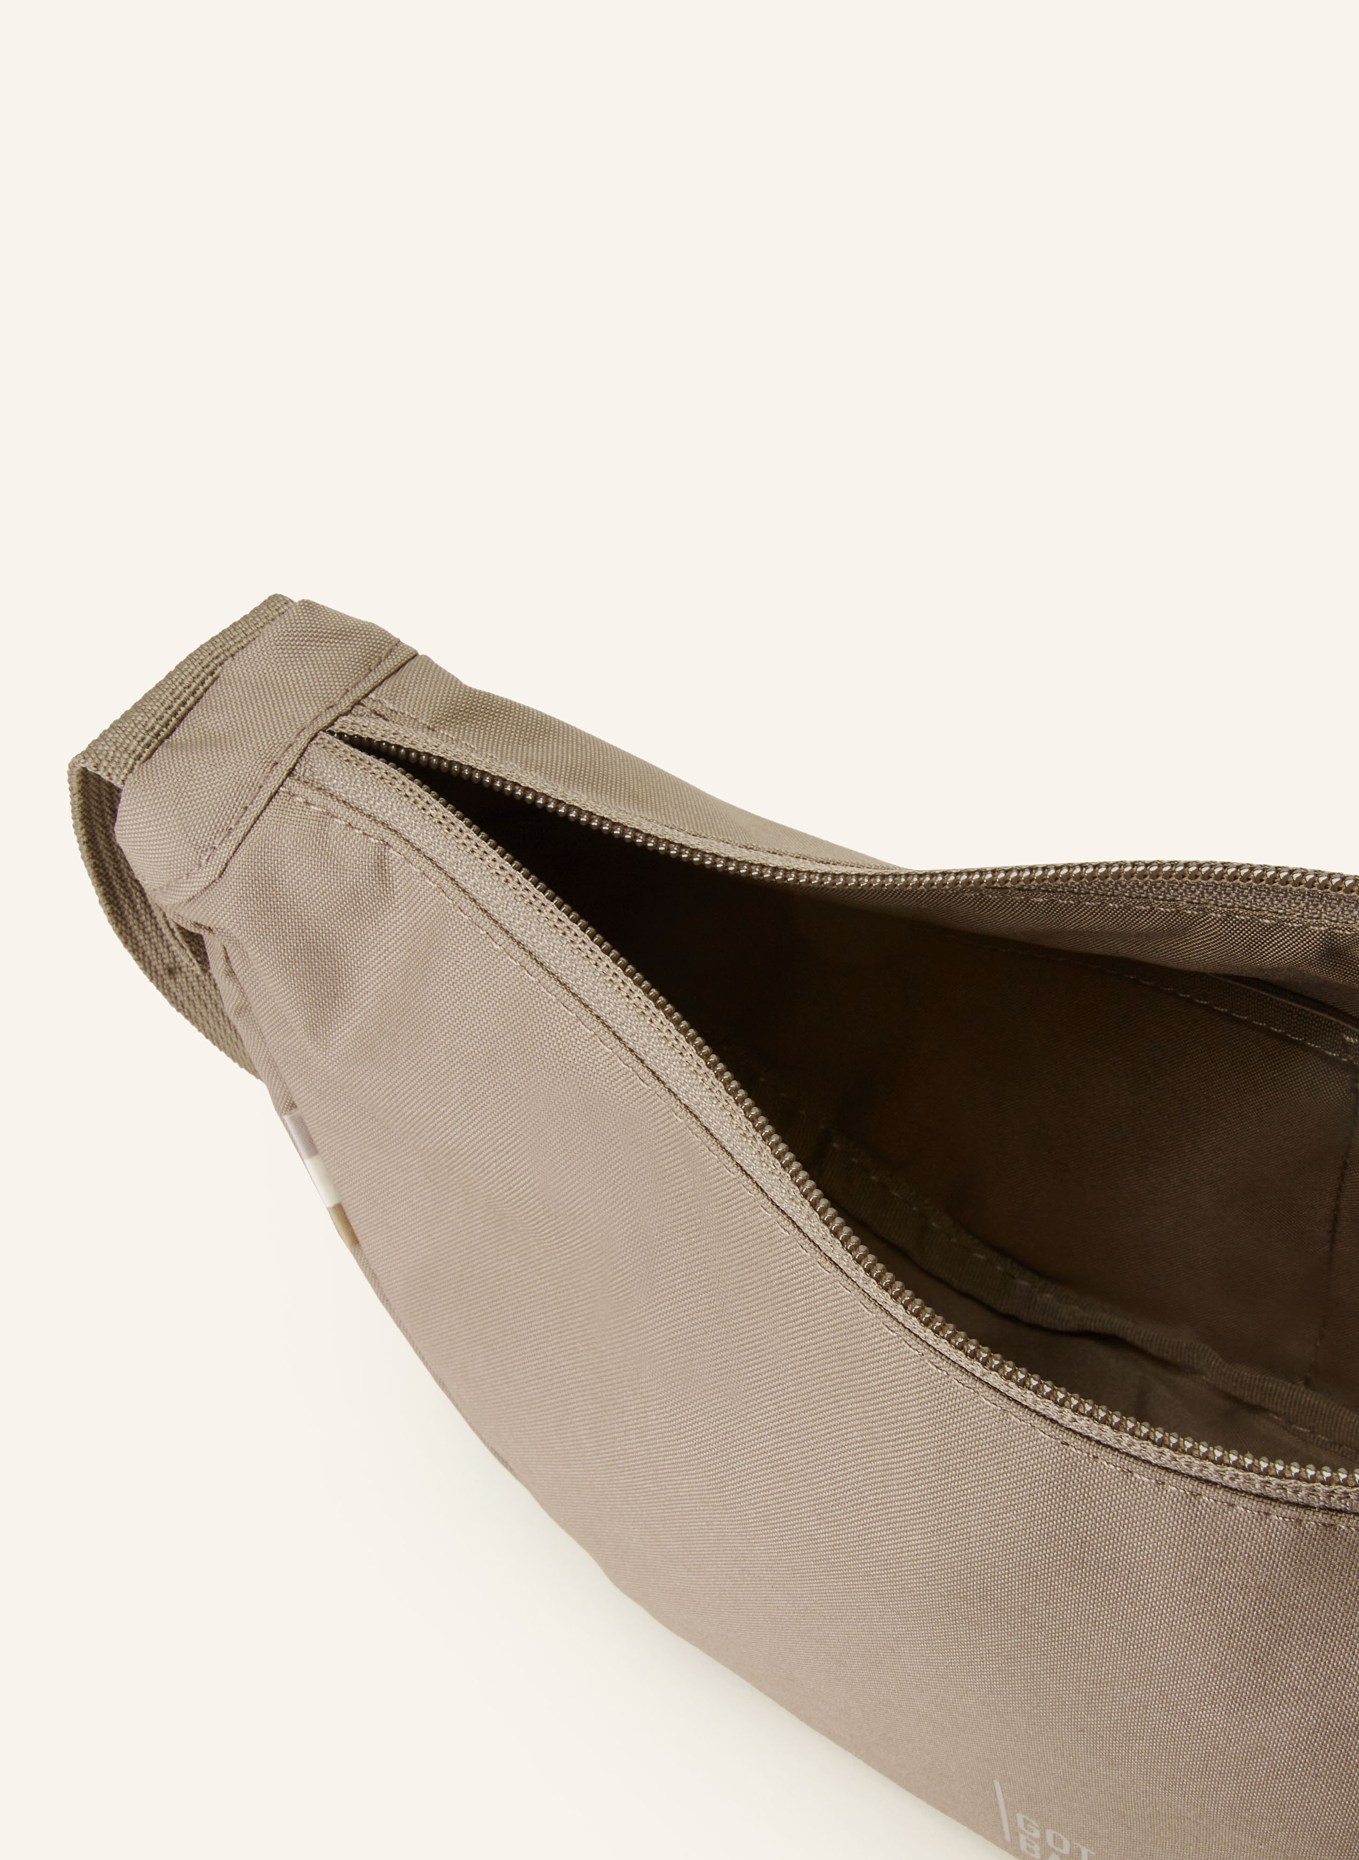 GOT BAG Waist bag MOON SMALL, Color: TAUPE (Image 3)